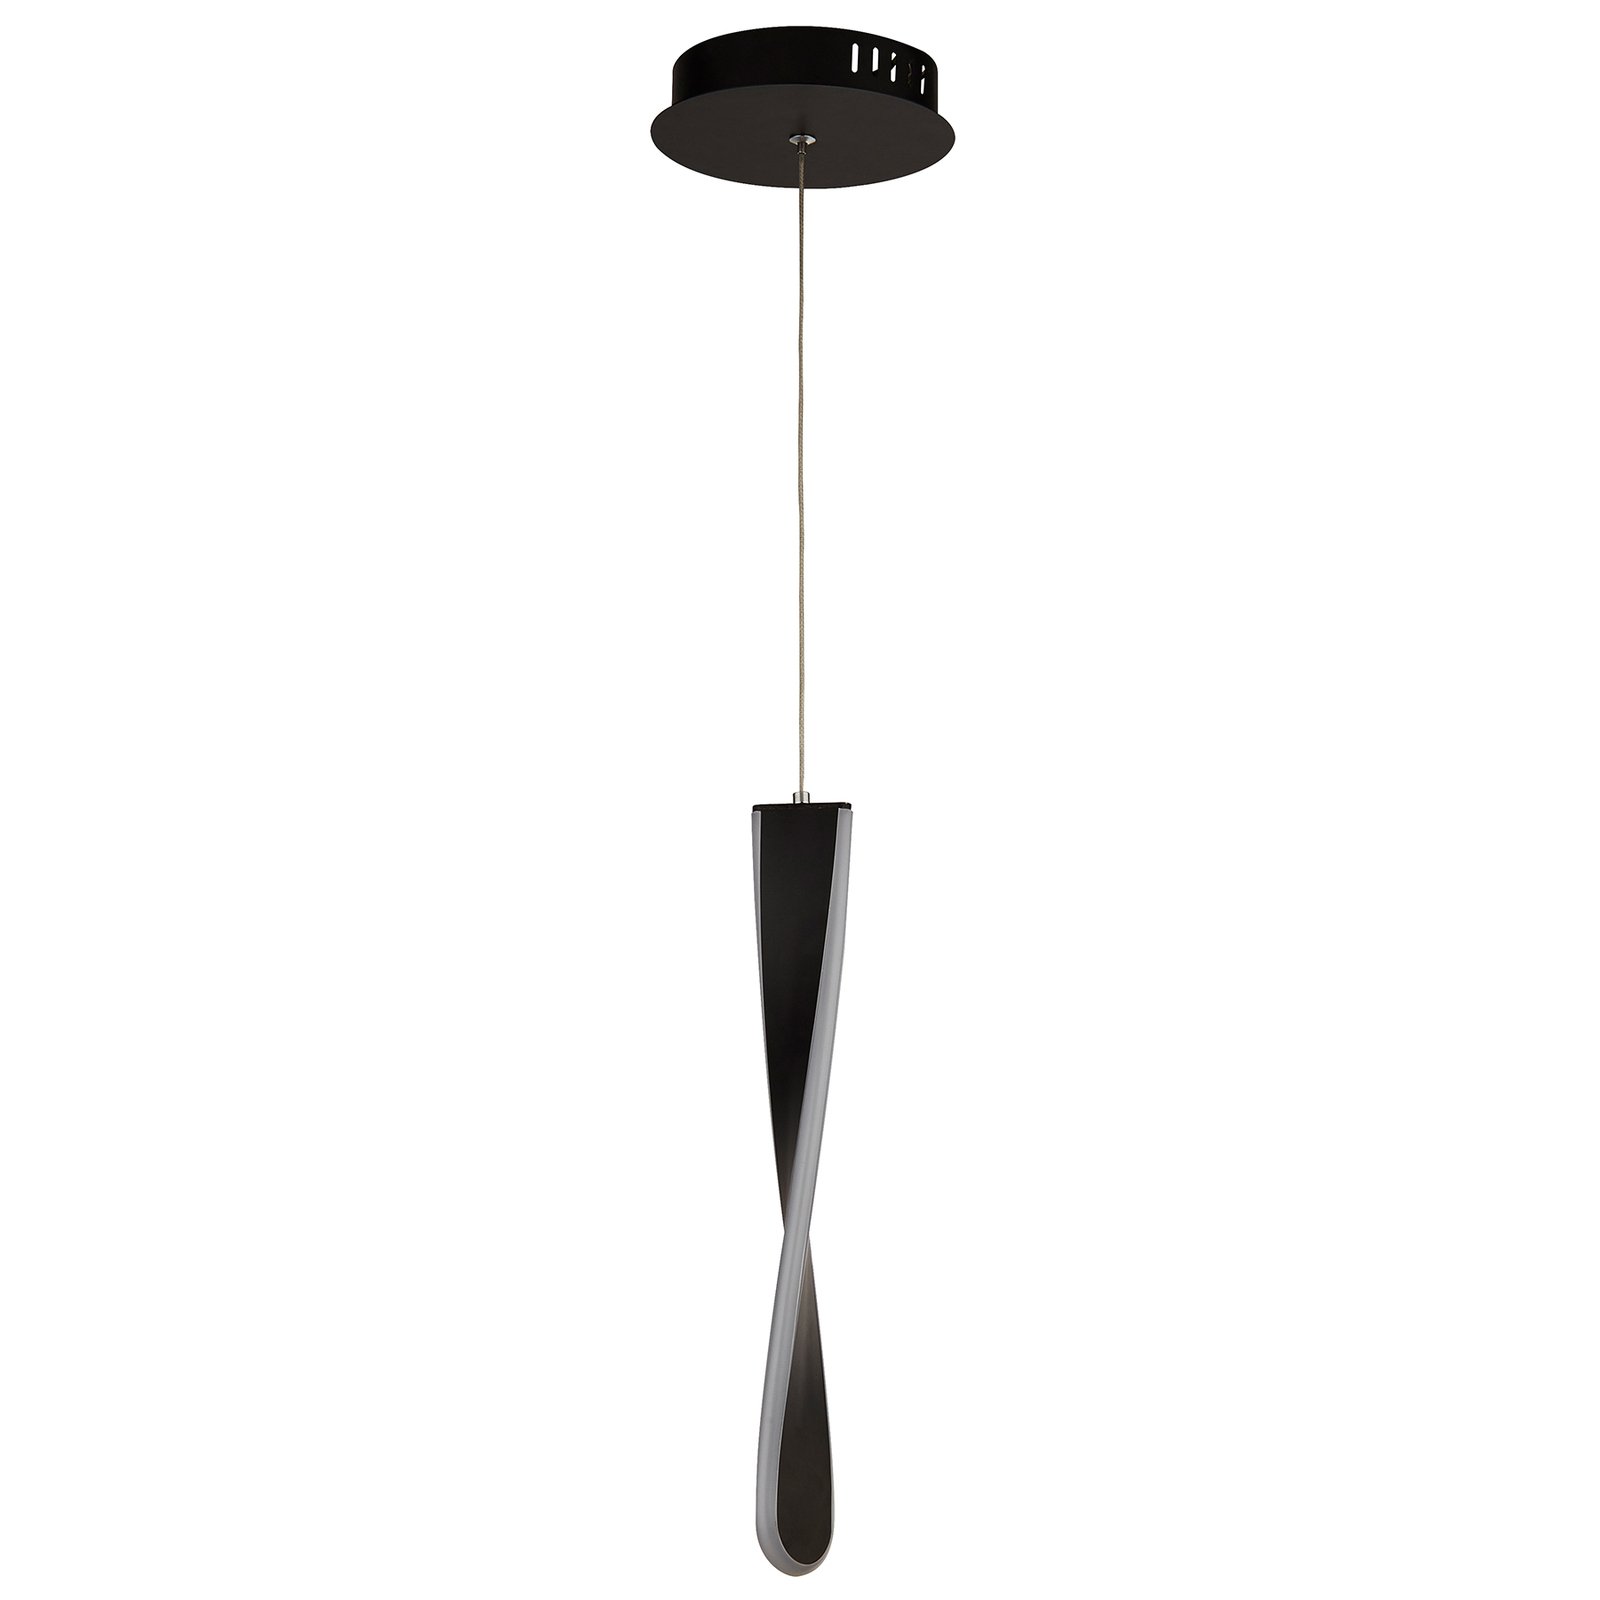 Paddle LED hanging light, one-bulb